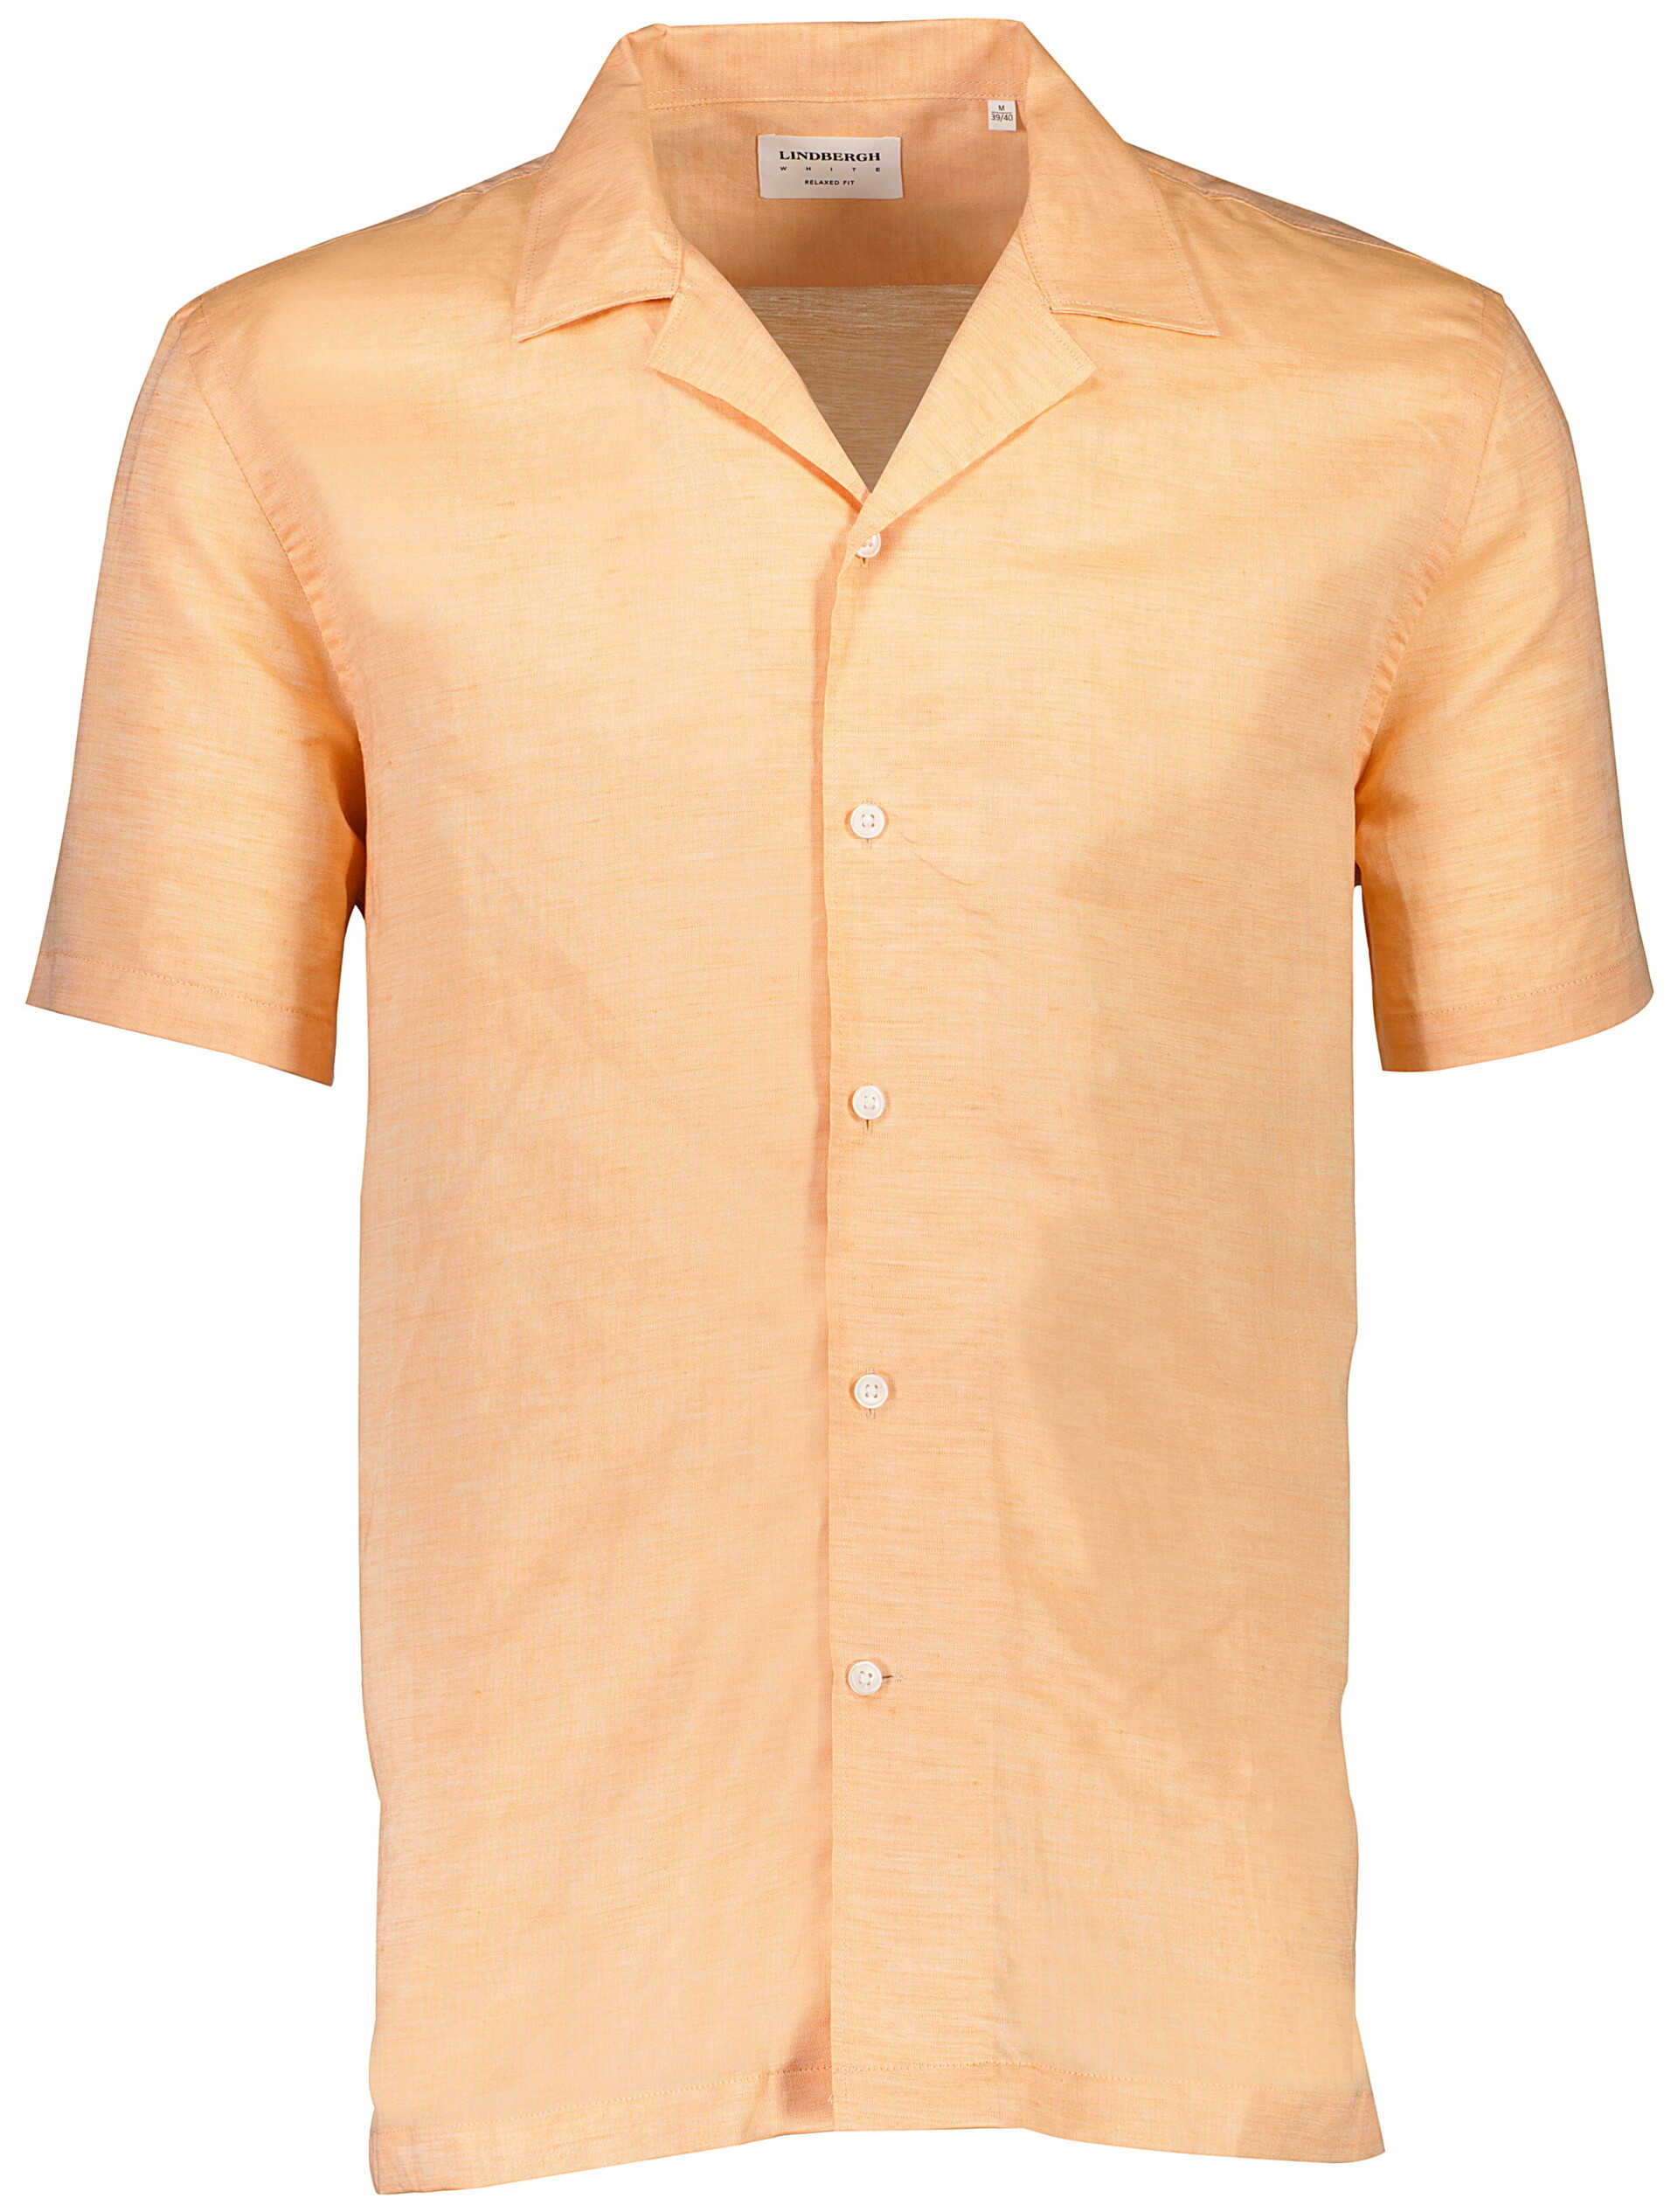 Lindbergh Linen shirt orange / pastel orange